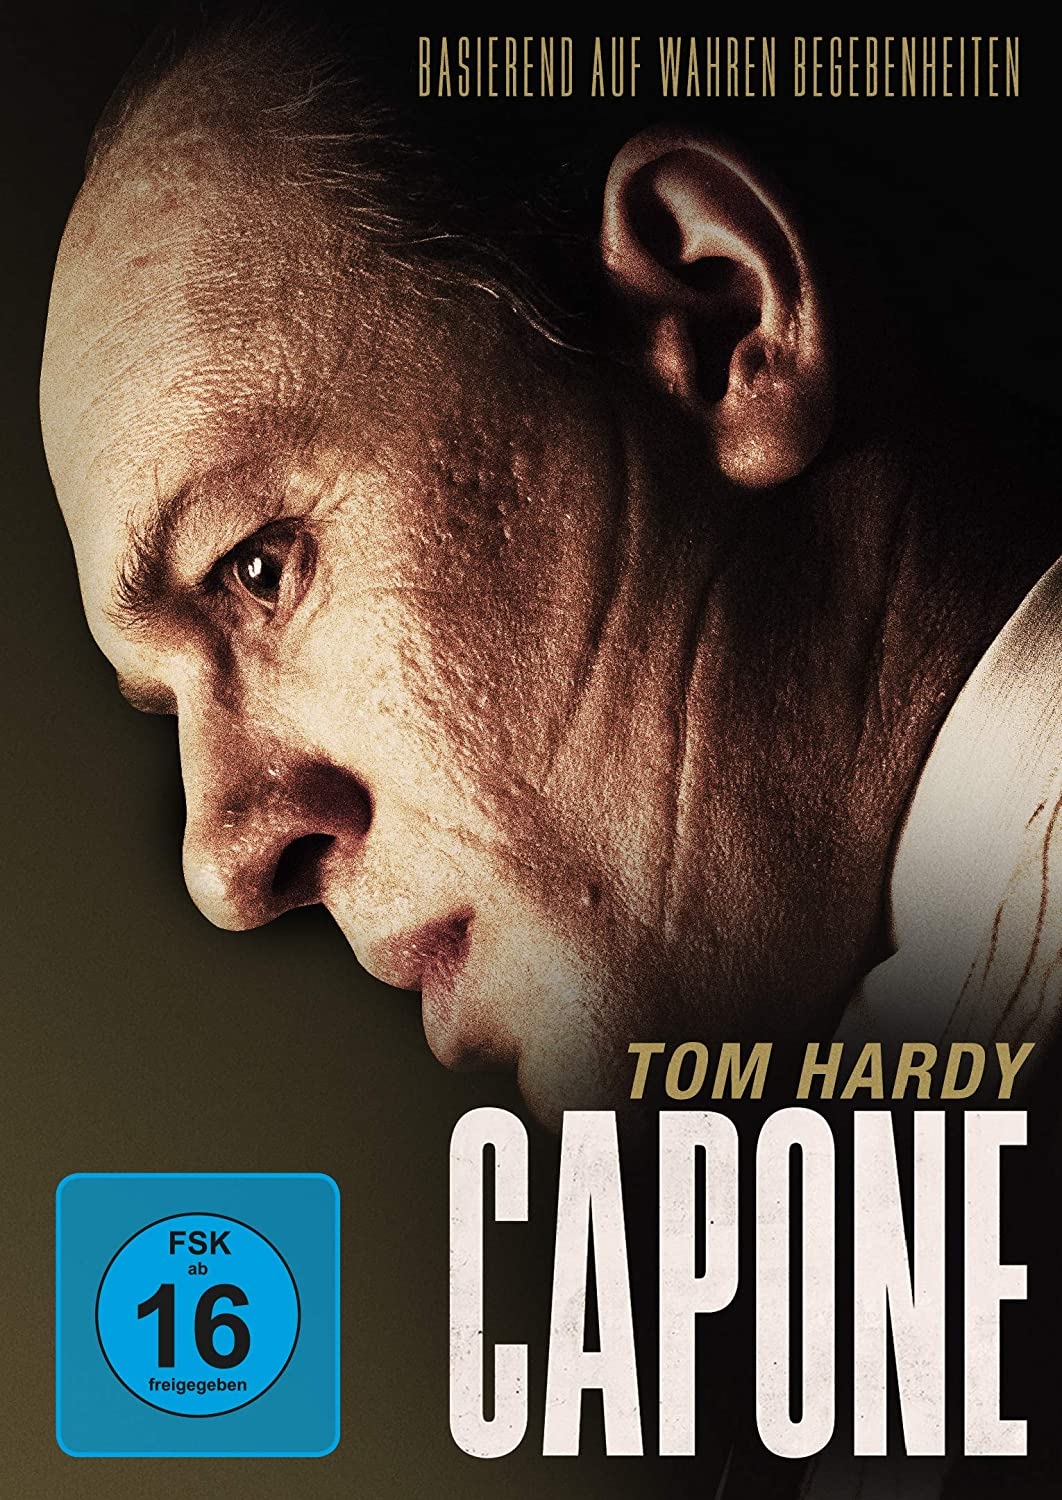 dvd 03 21 Capone